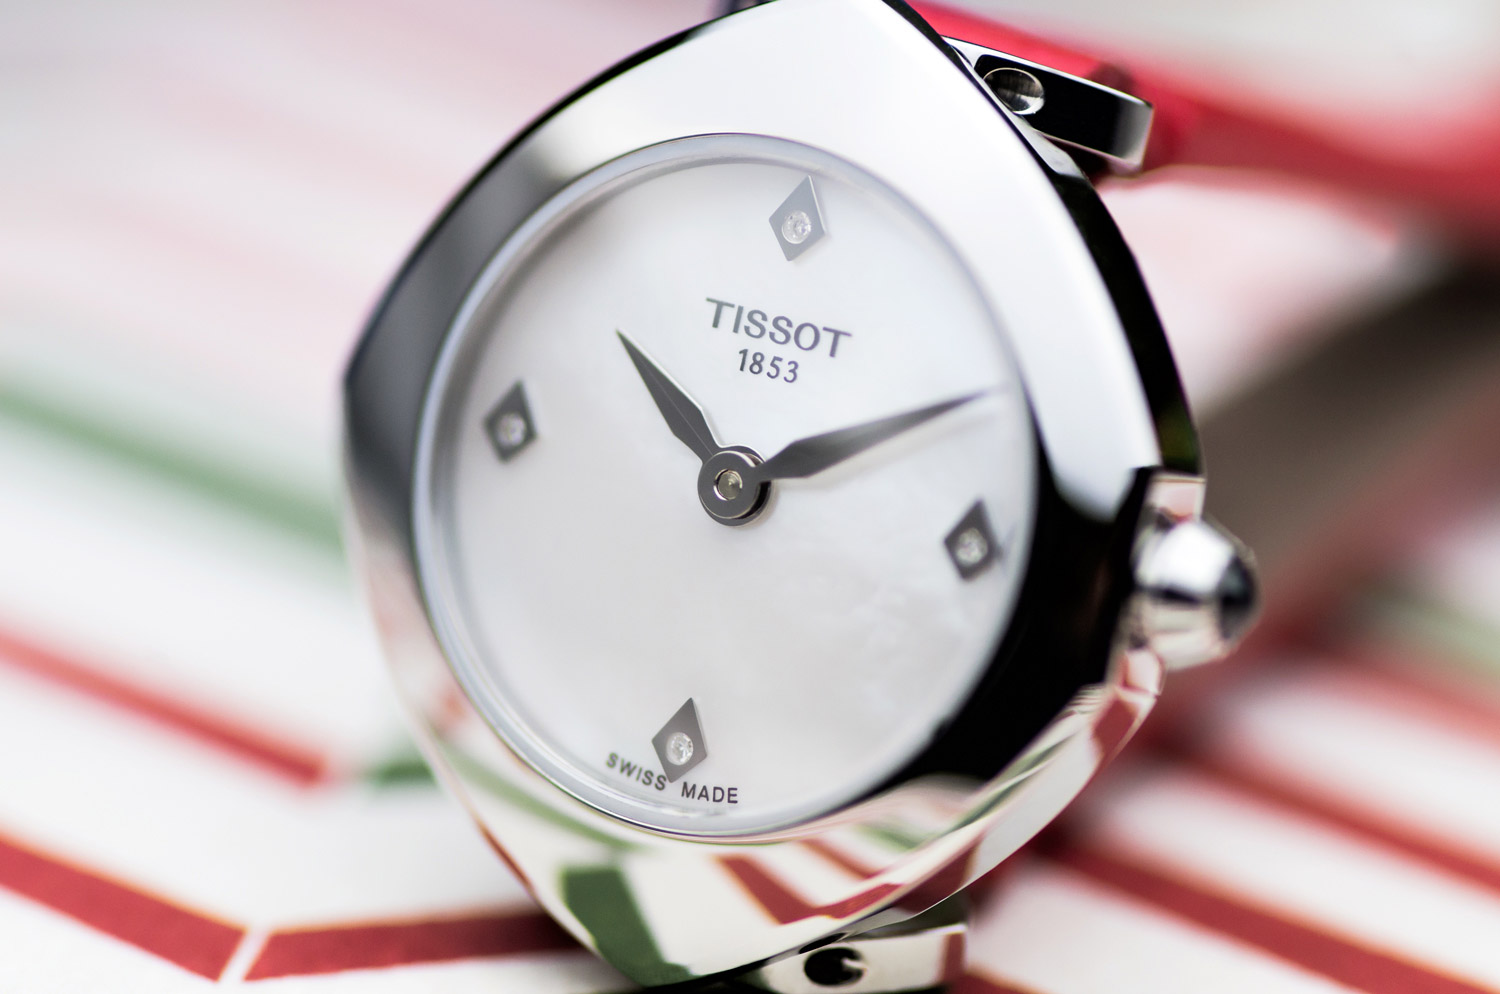 Đồng hồ nữ Tissot Femini-T xu hướng đồng hồ 2018